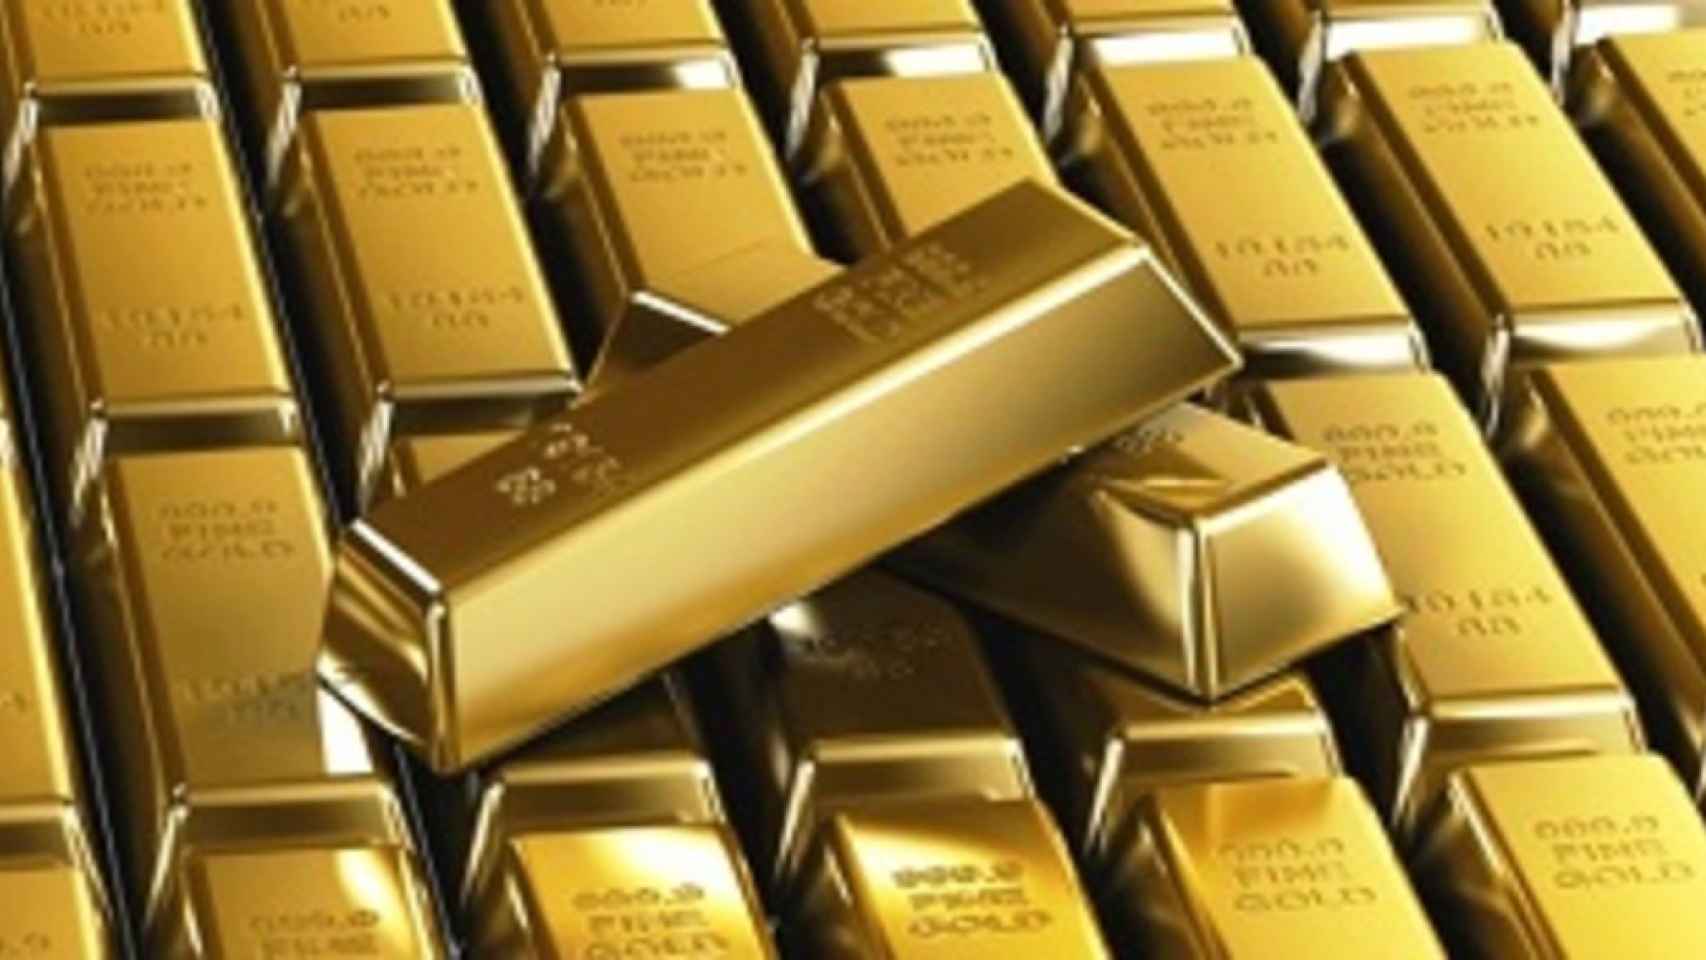 Las reservas de oro en la Deutsche Börse suben al récord de 167,55 toneladas